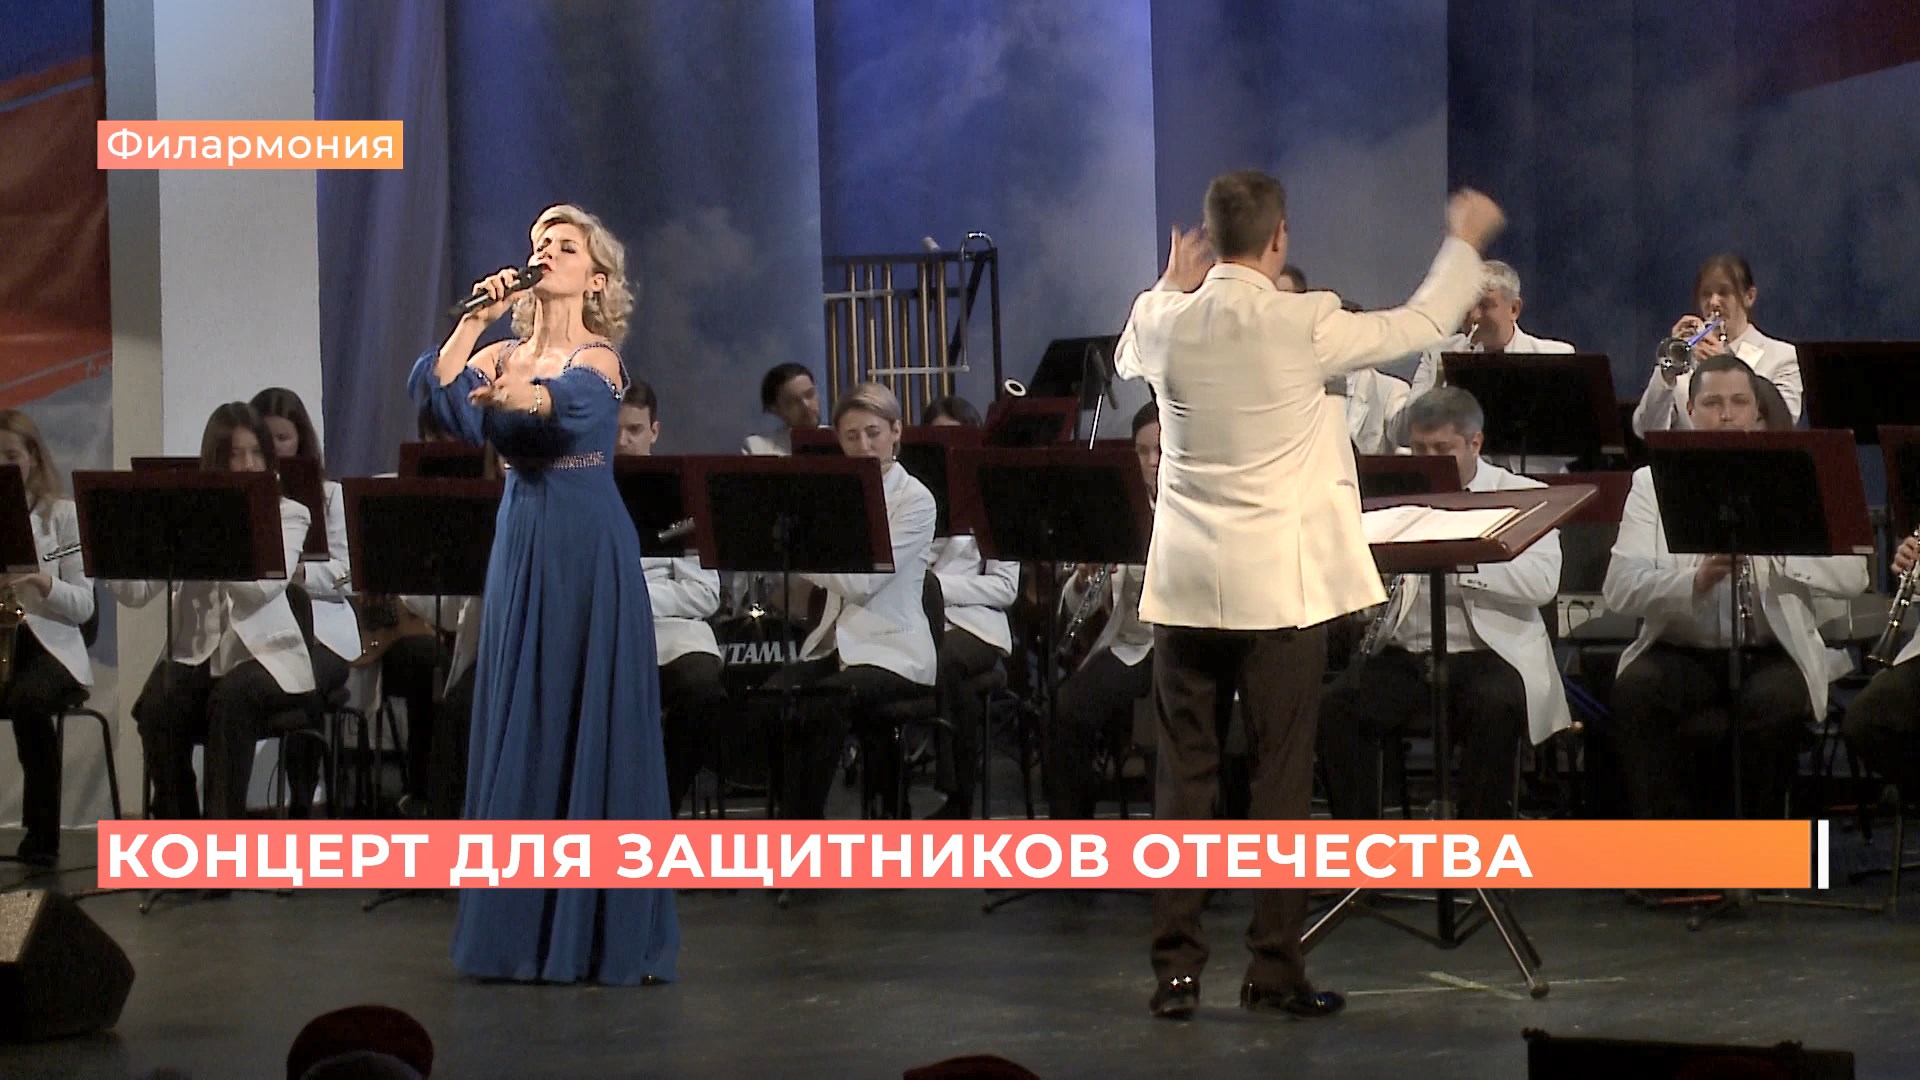 Для героев былых времён: в Ростовской филармонии прошёл концерт в честь защитников Отечества